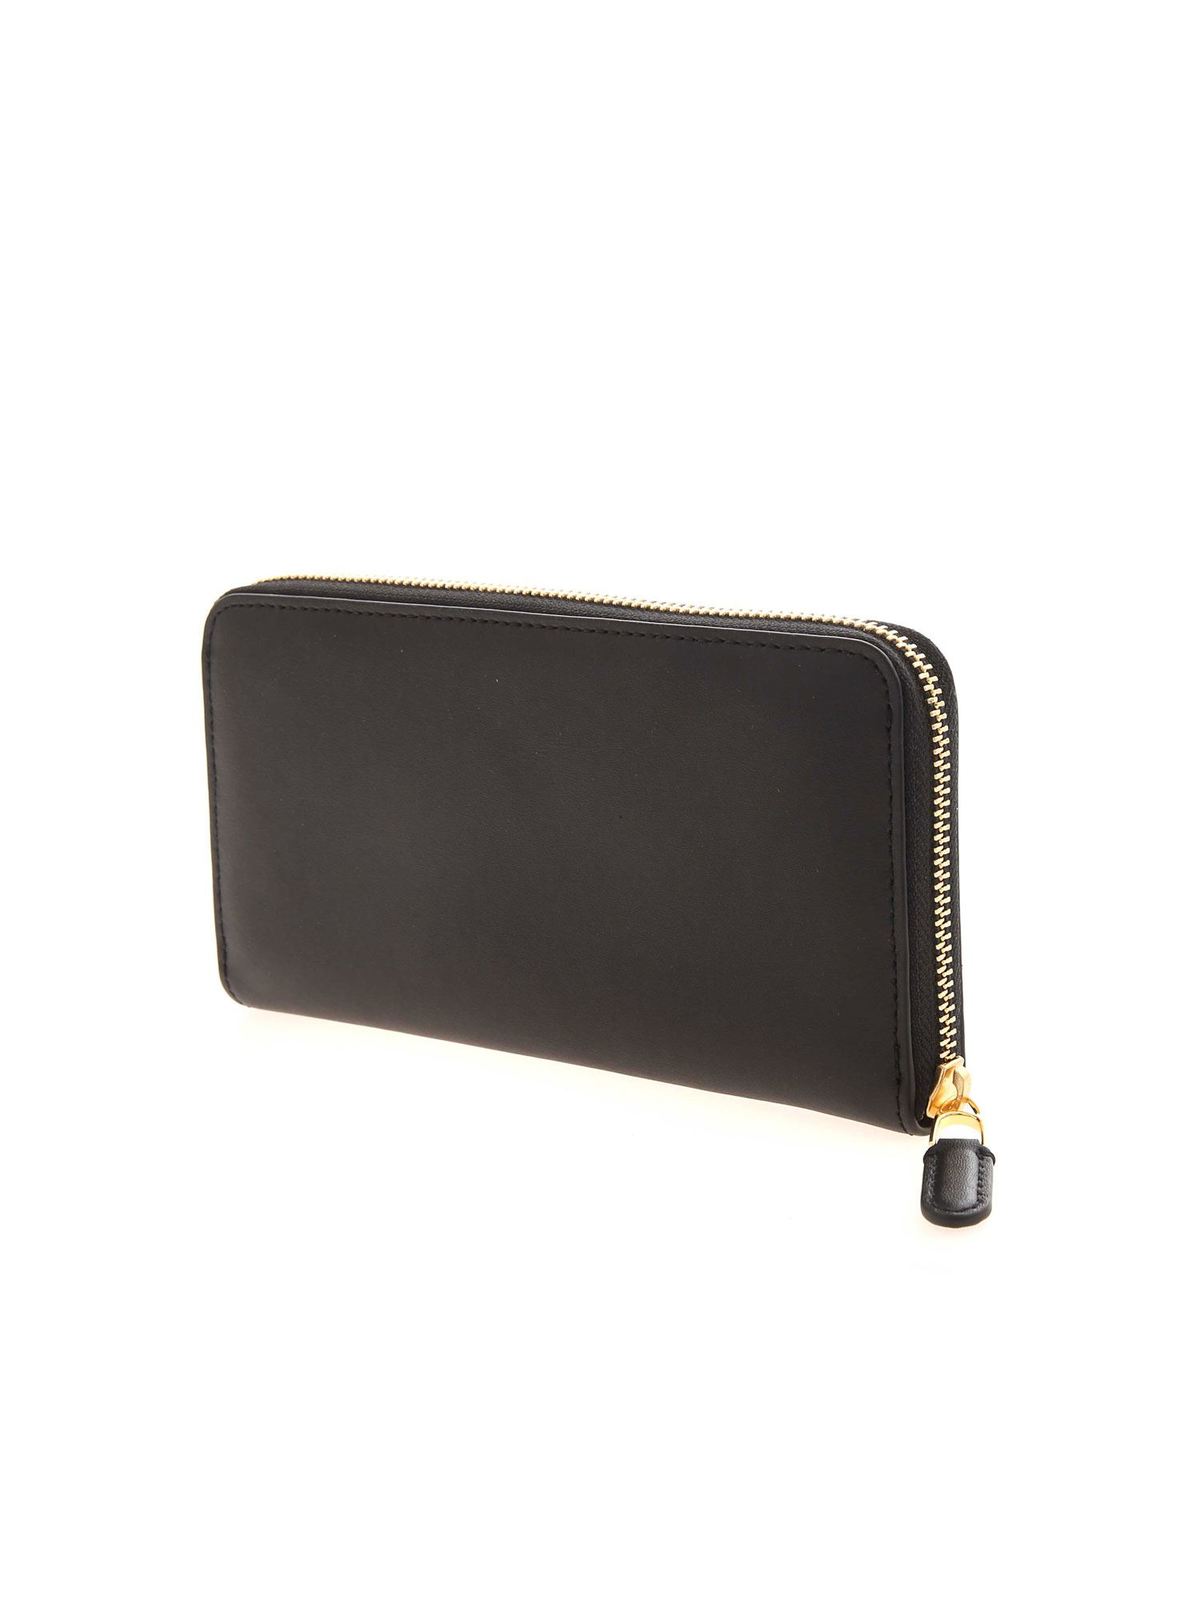 Lauren Ralph Lauren Zip Black Leather Card Case